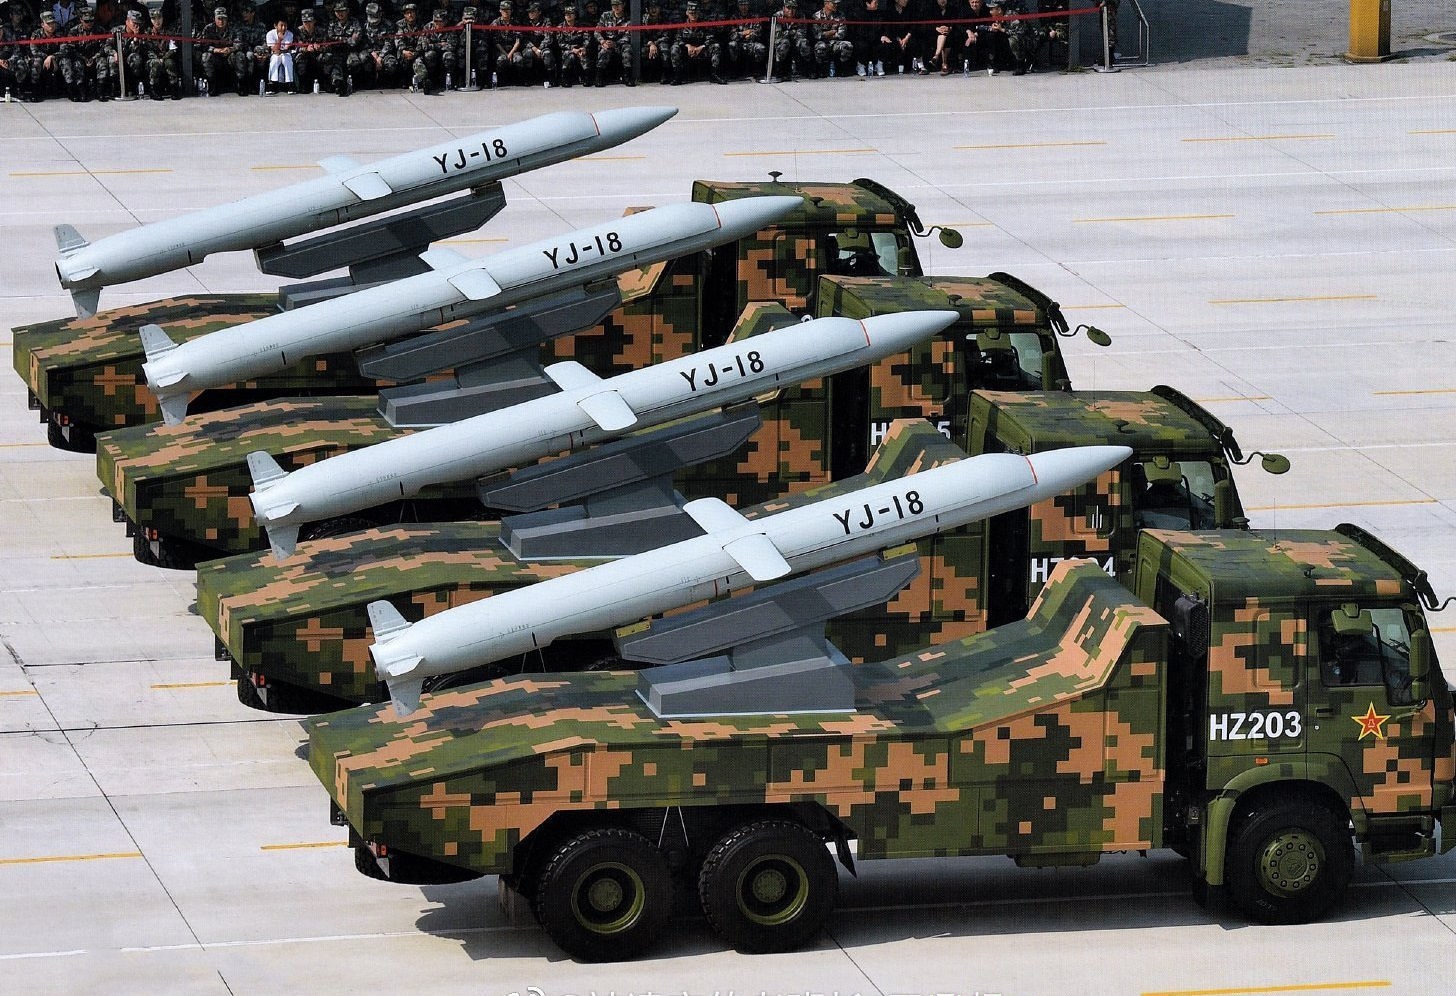 ChinaYJ18_missile.jpg